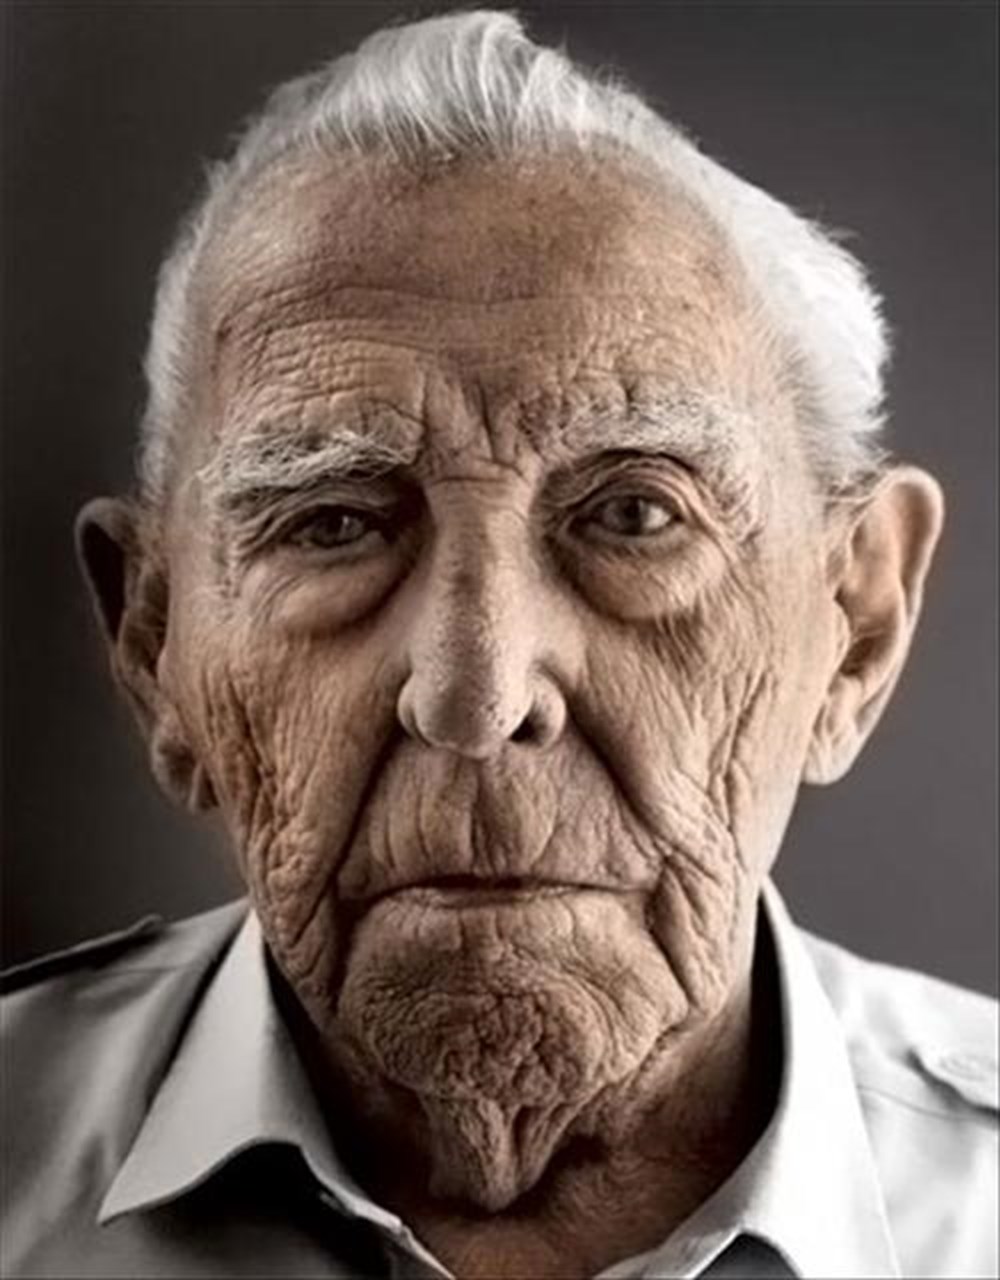 Elder older wordwall. Лицо старика. Портрет пожилого мужчины. Старый человек. Лицо старого человека.